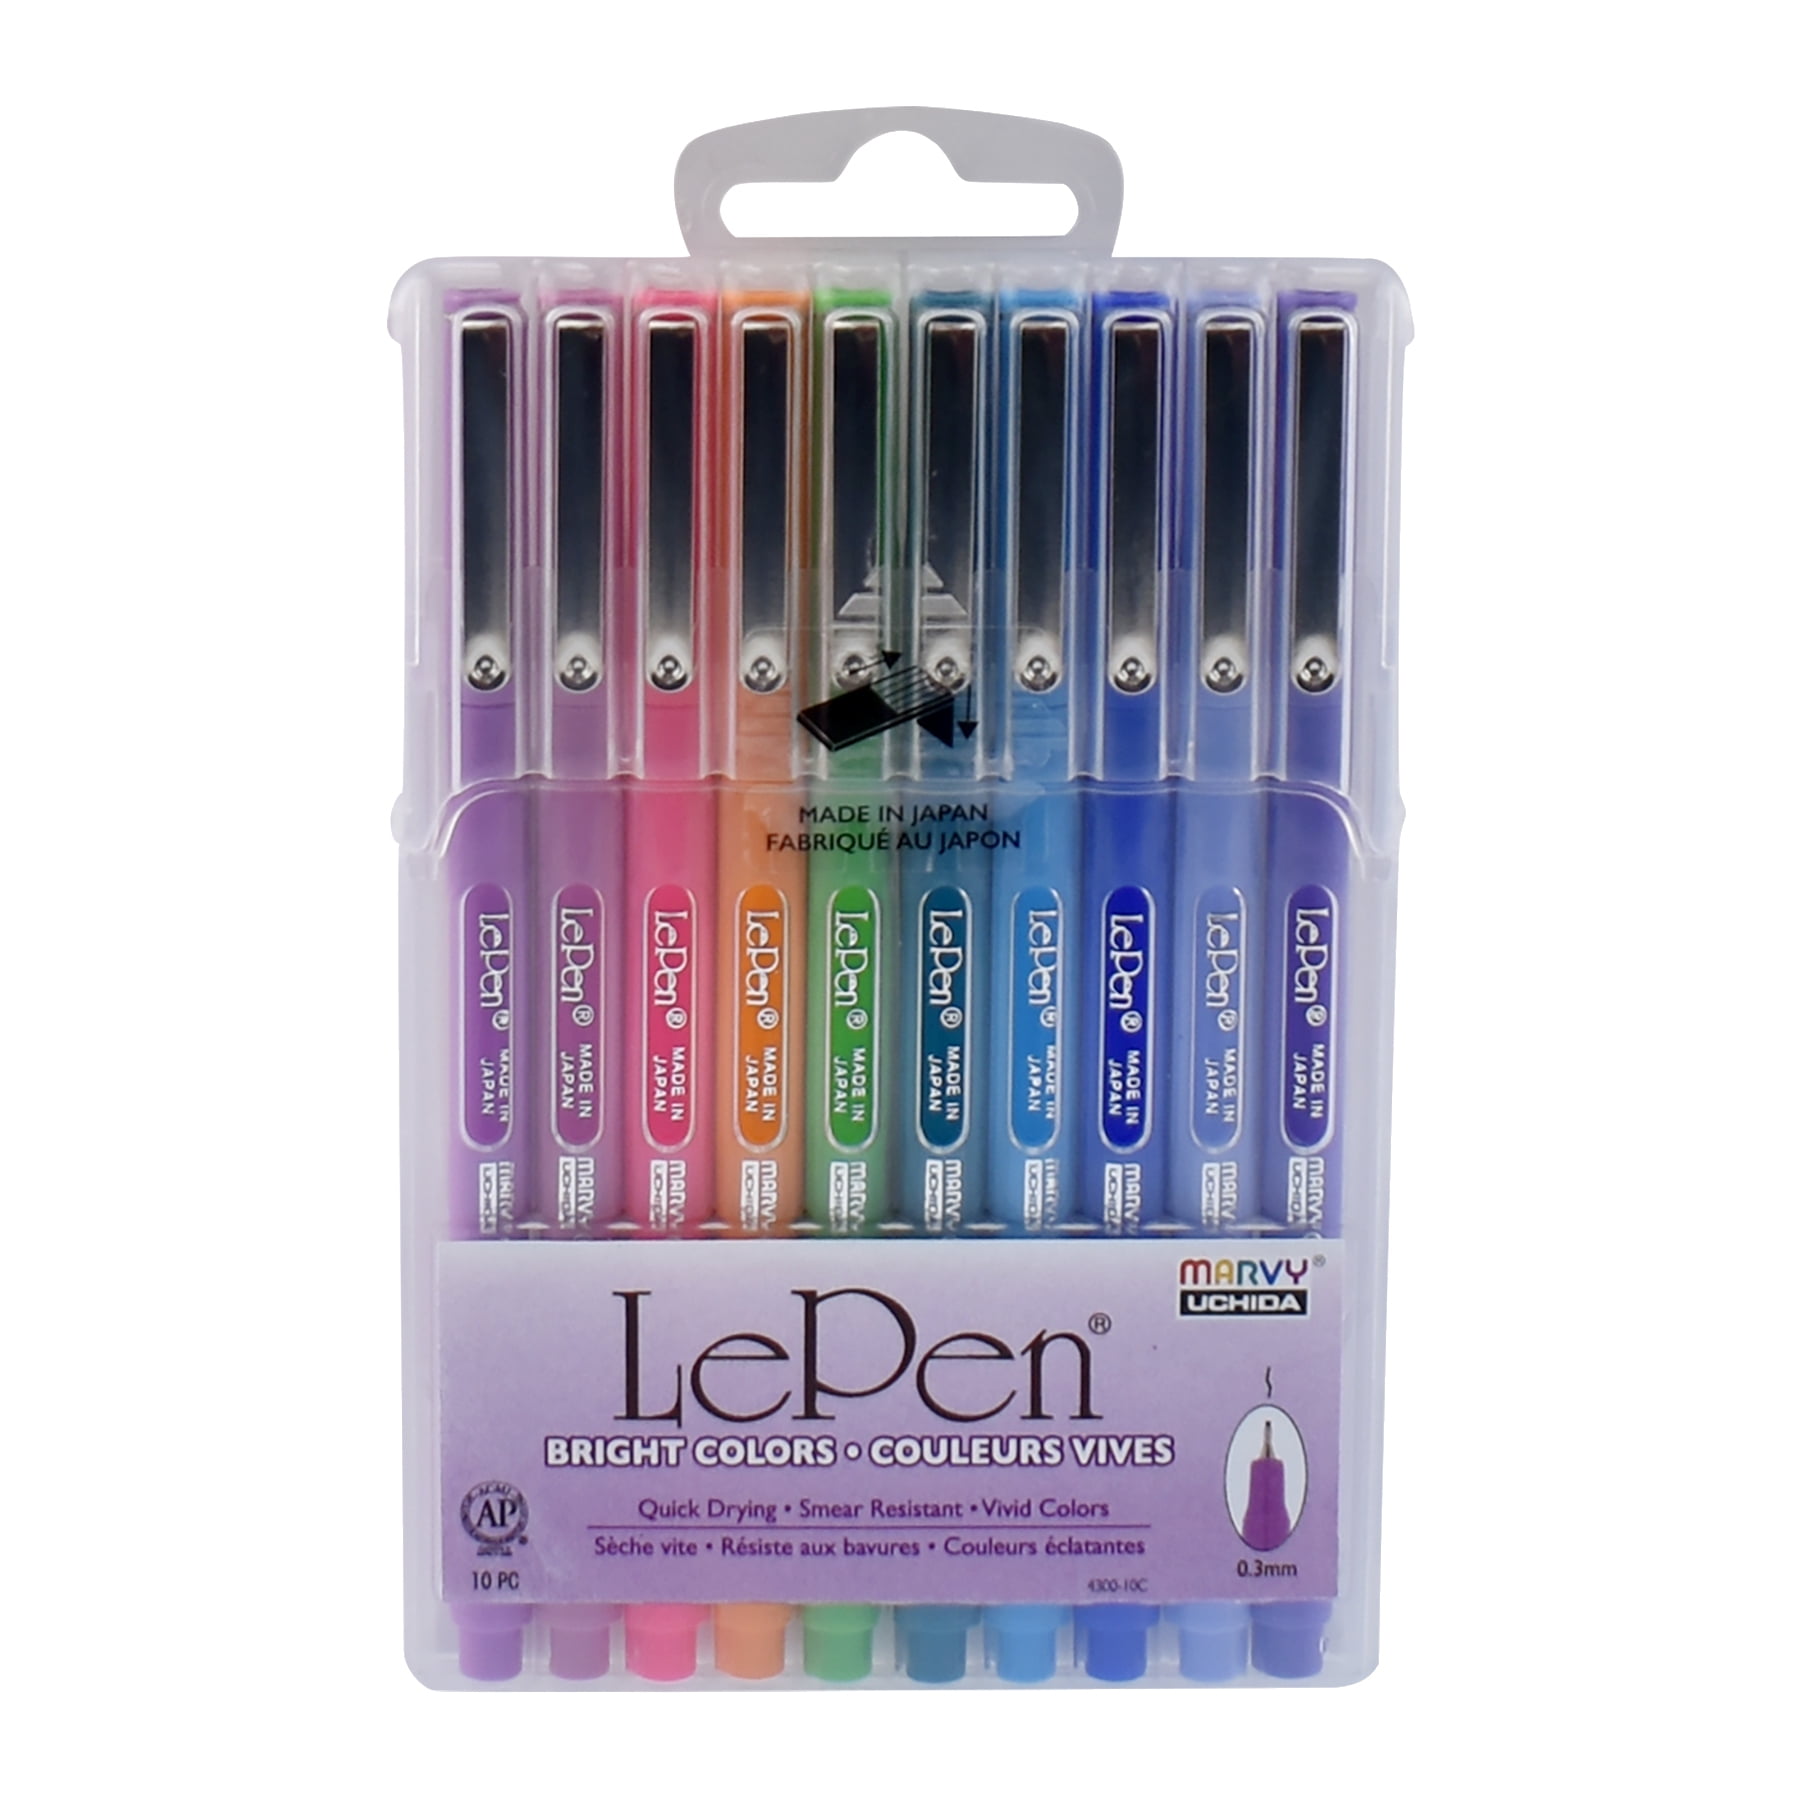 Marvy, Uchida, Le Pen, LePen, Felt Tip Pens, Dark Color, Medium